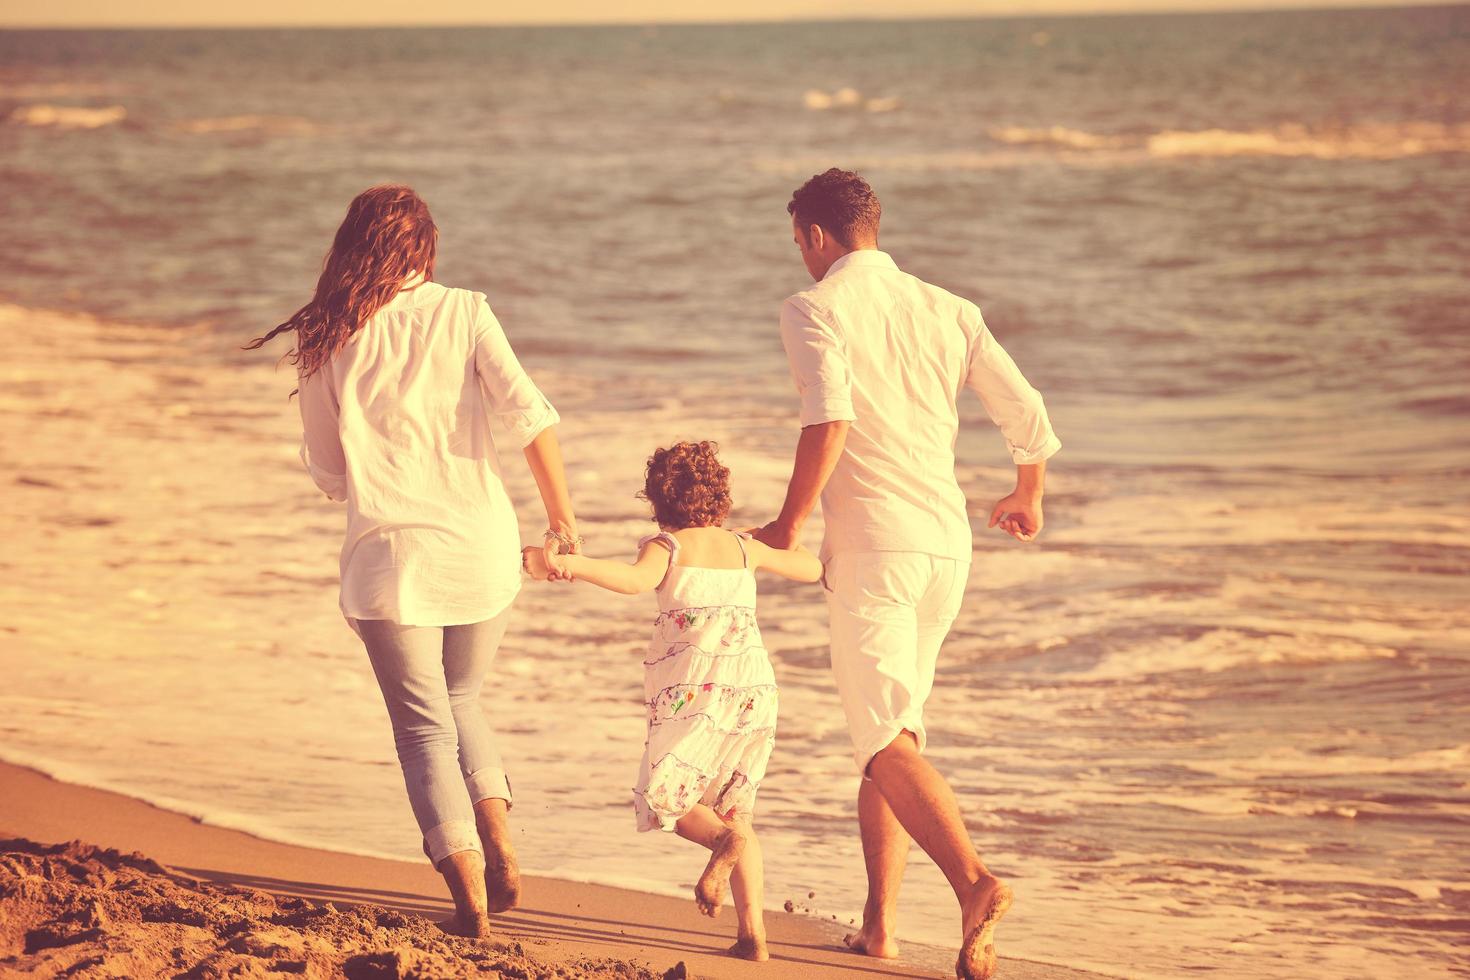 glückliche junge familie hat spaß am strand foto